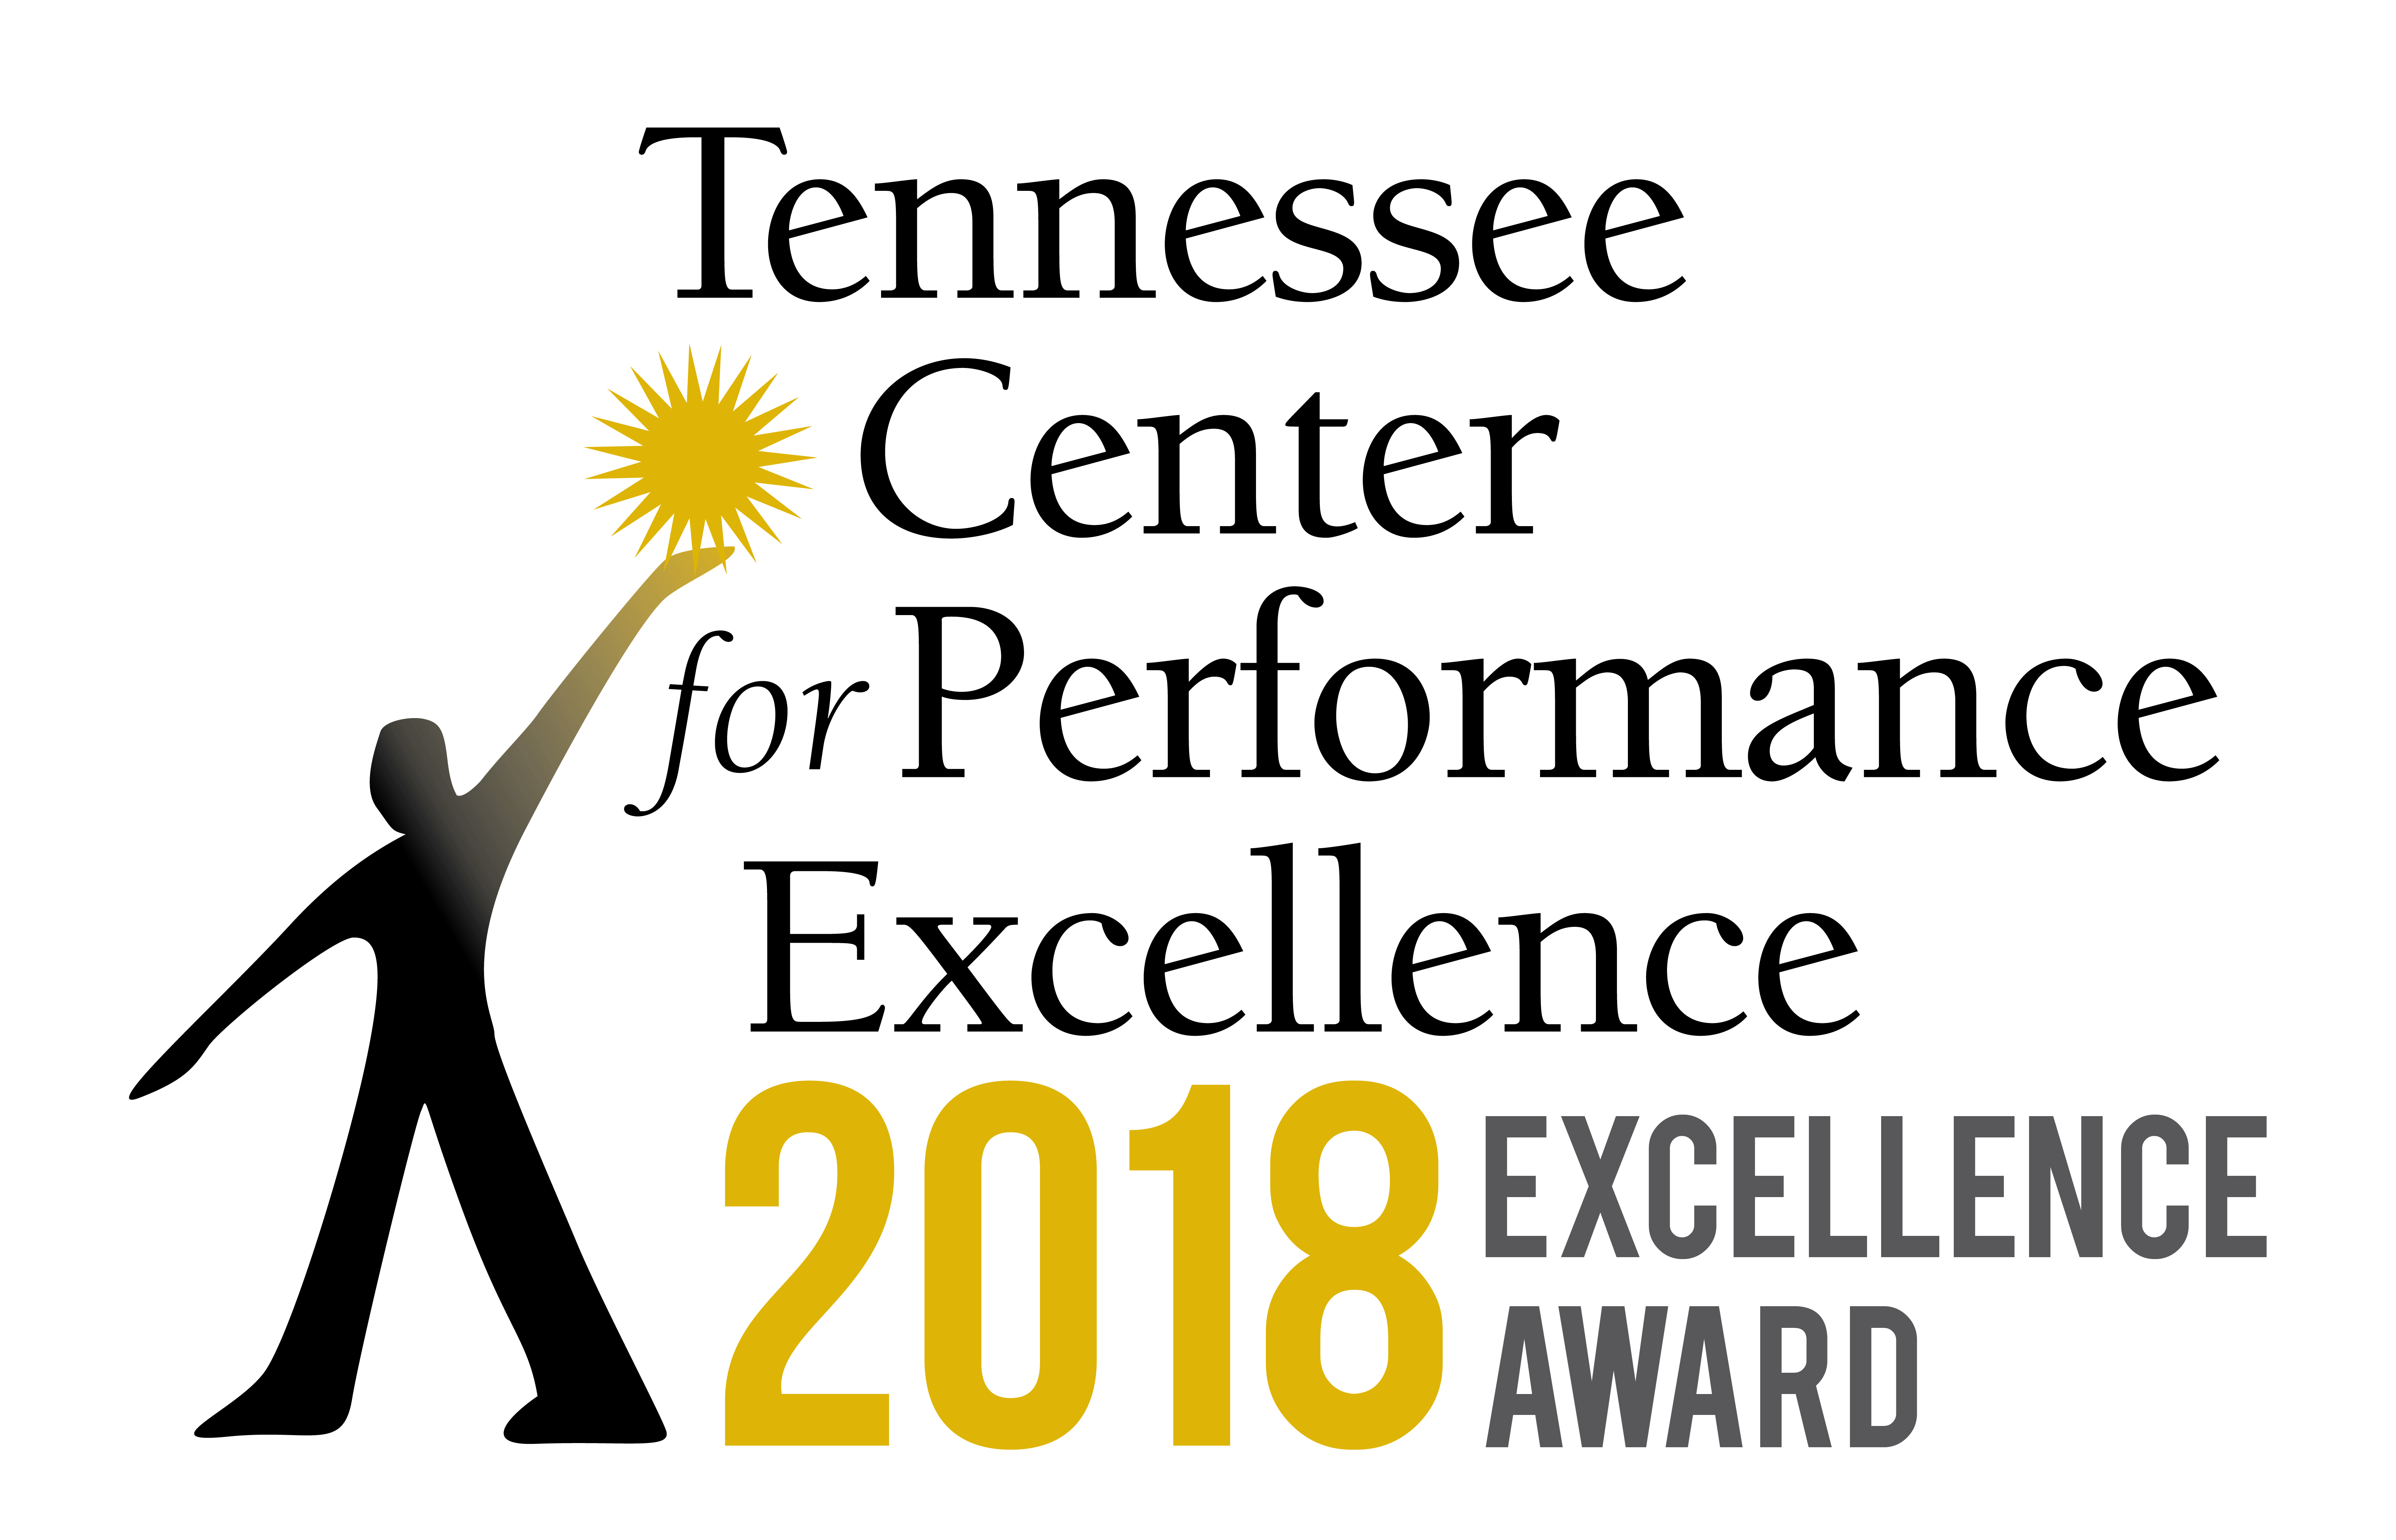 2018 Excellence Award